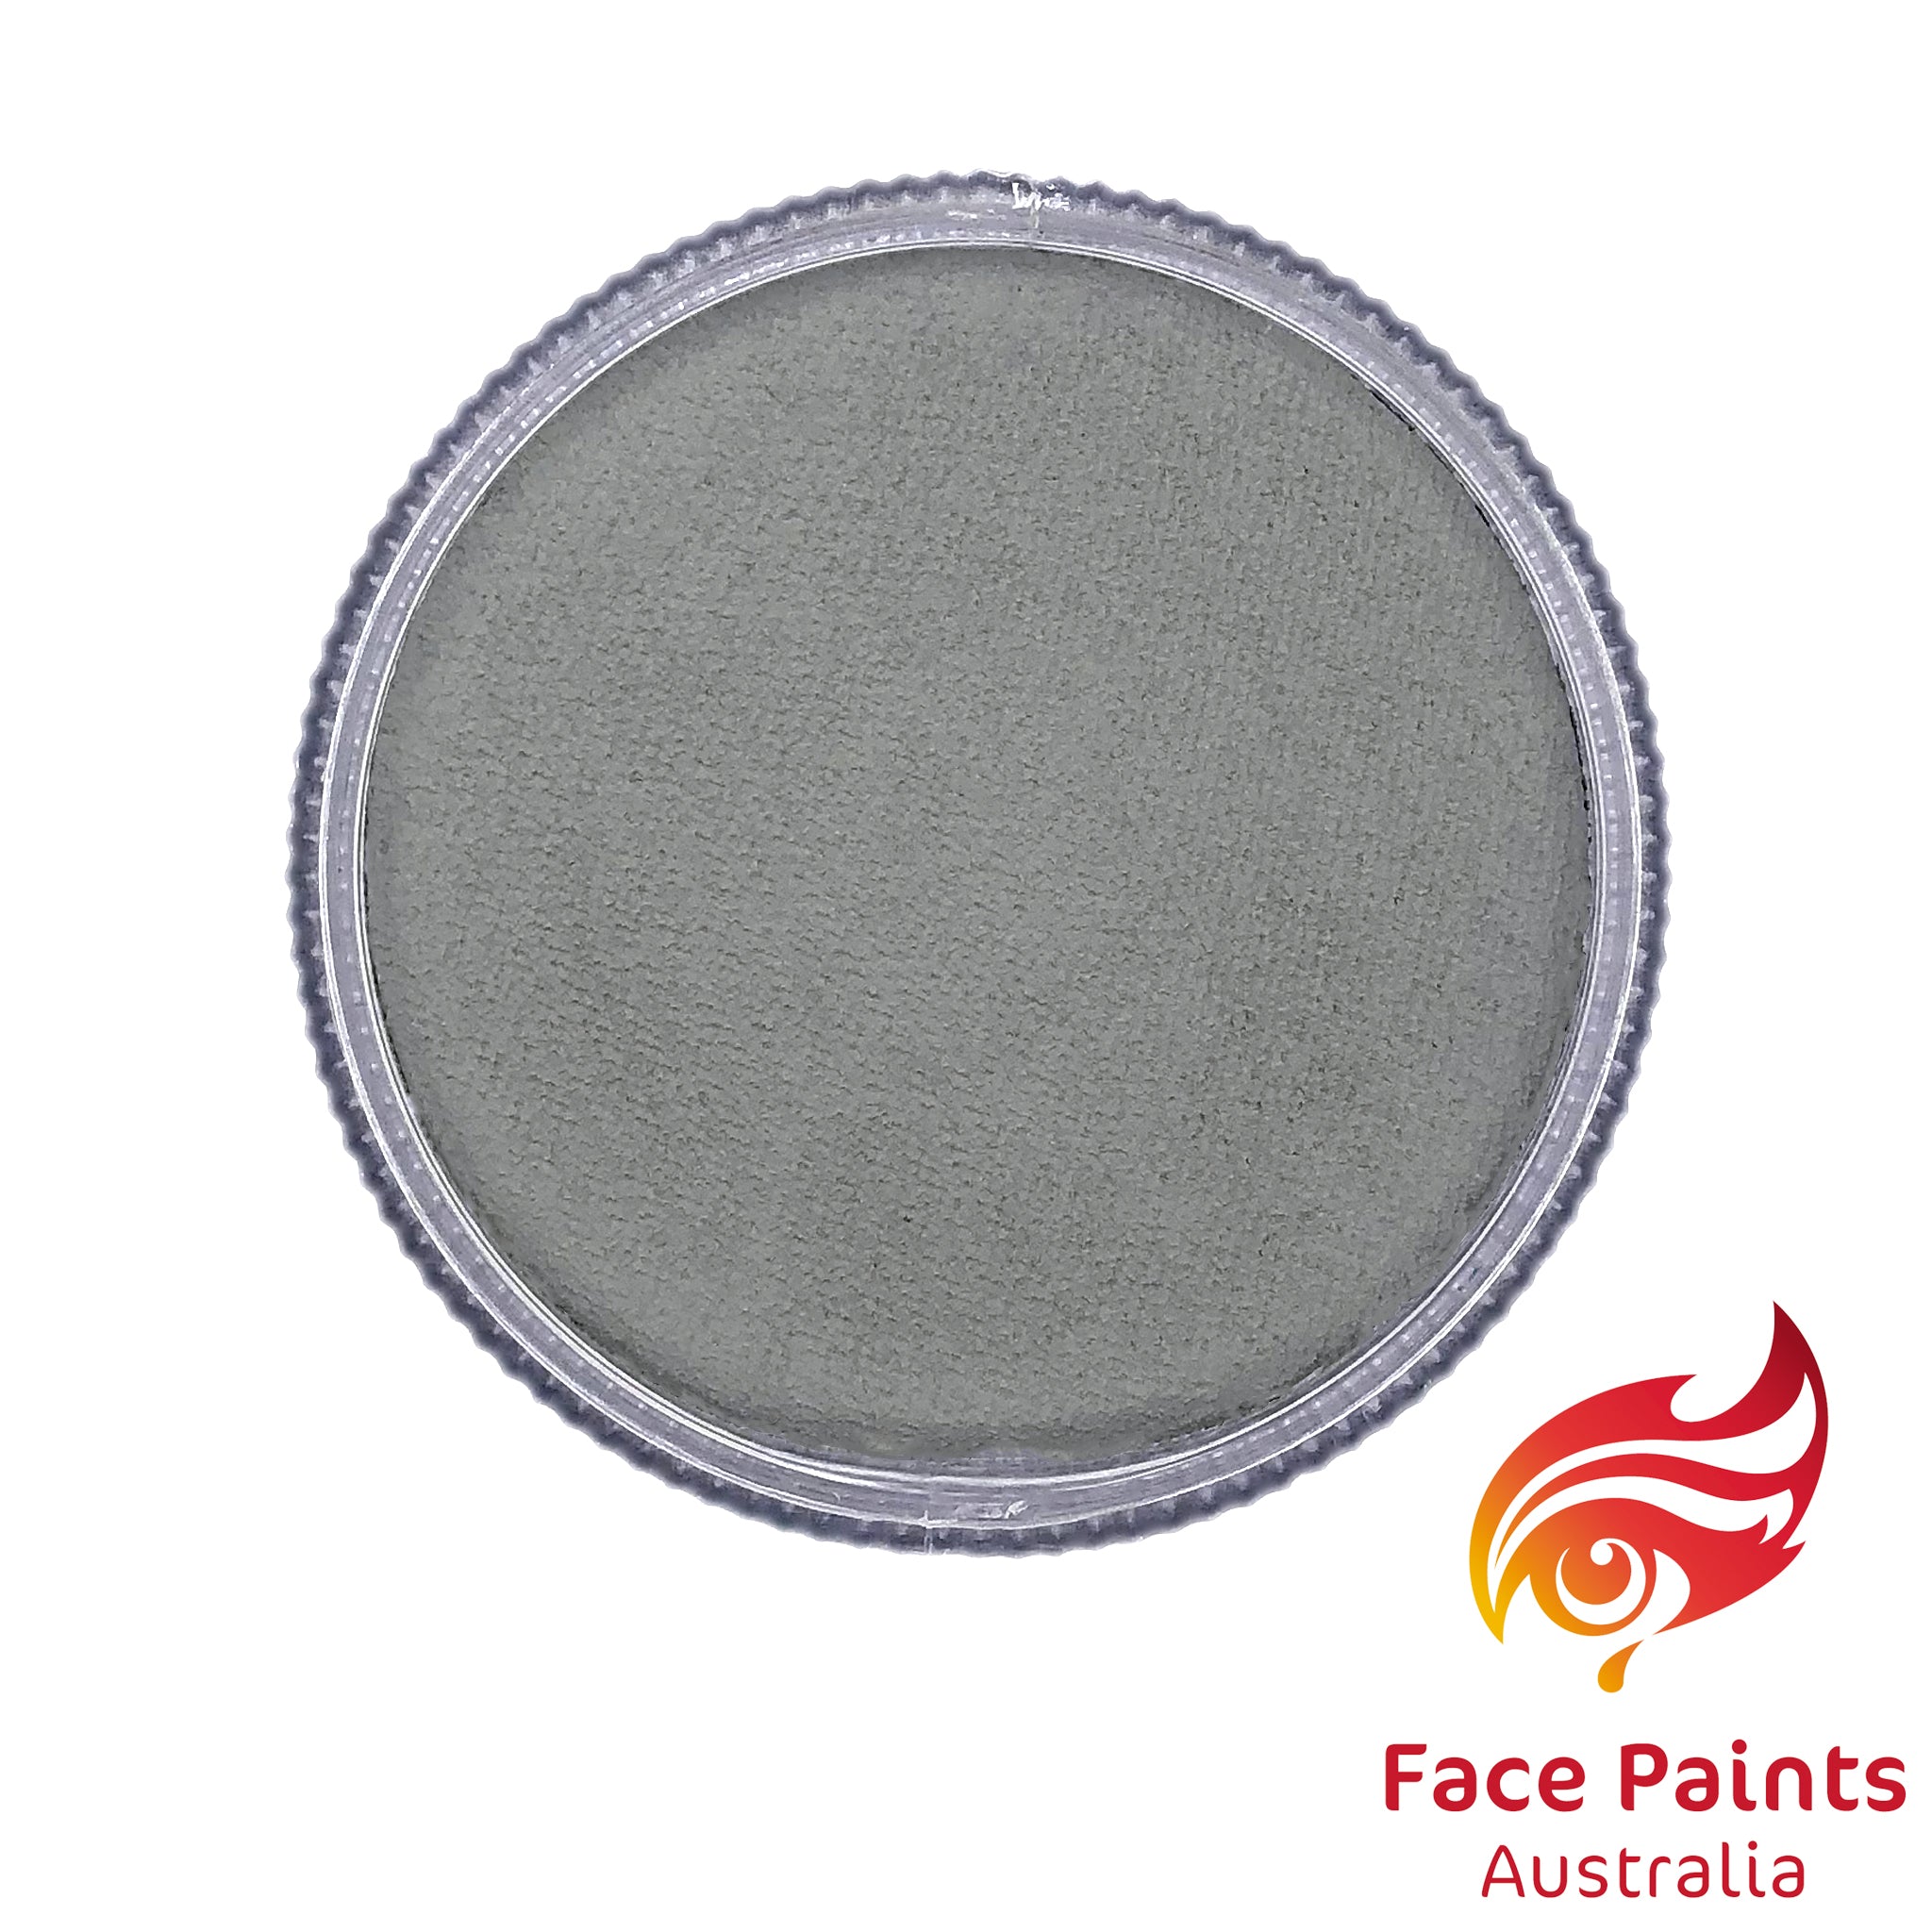 Face paints Australia Essential 30g Light Grey